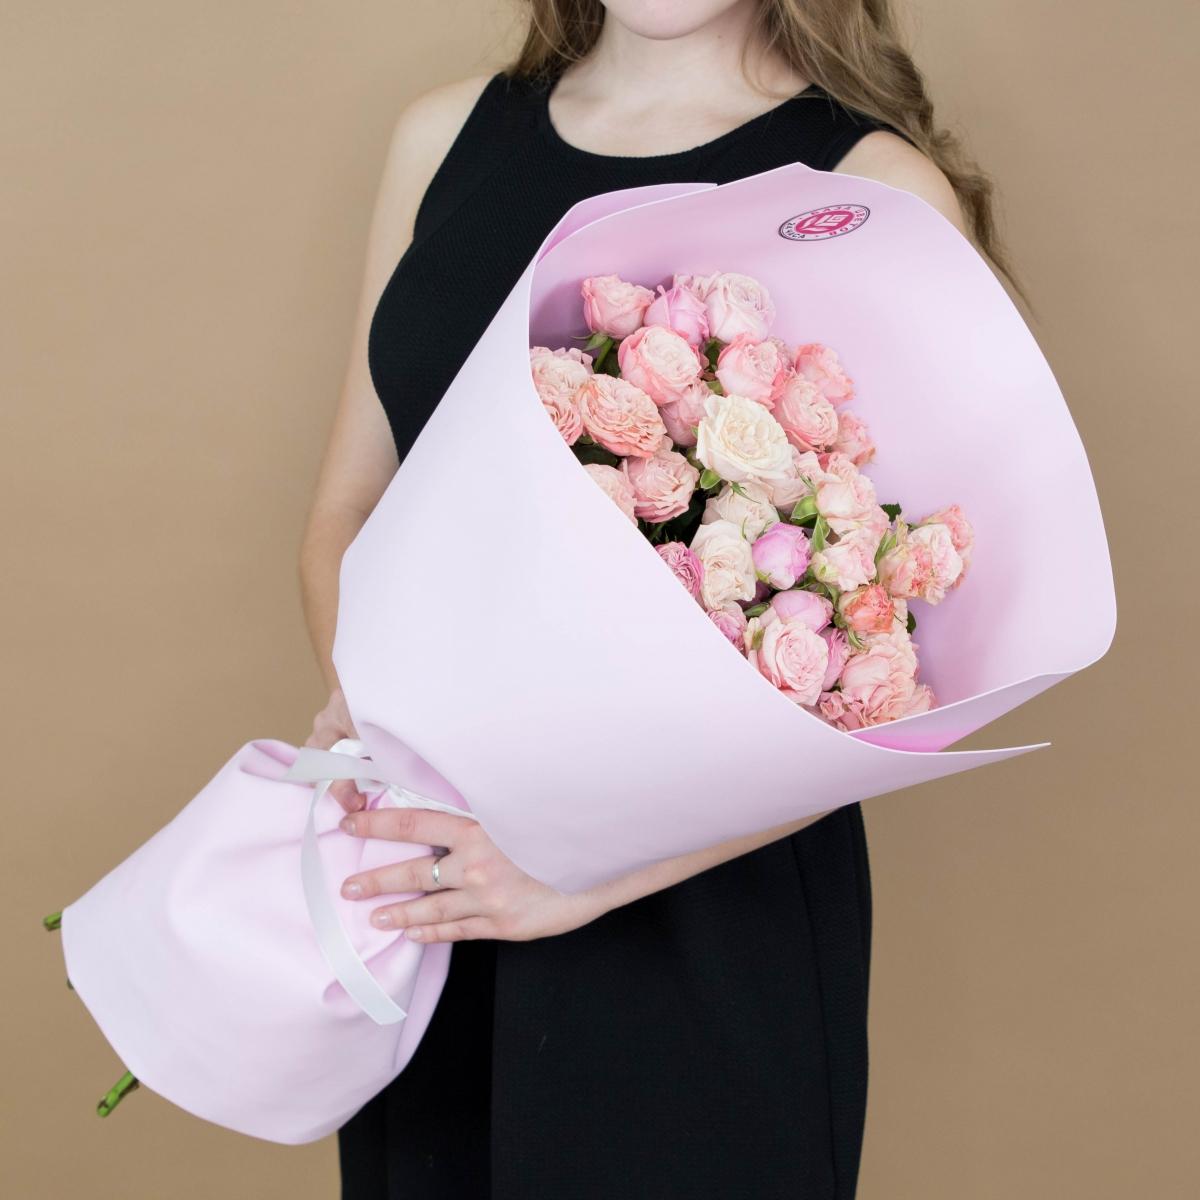 Розы кустовые розовые код товара: 377tm